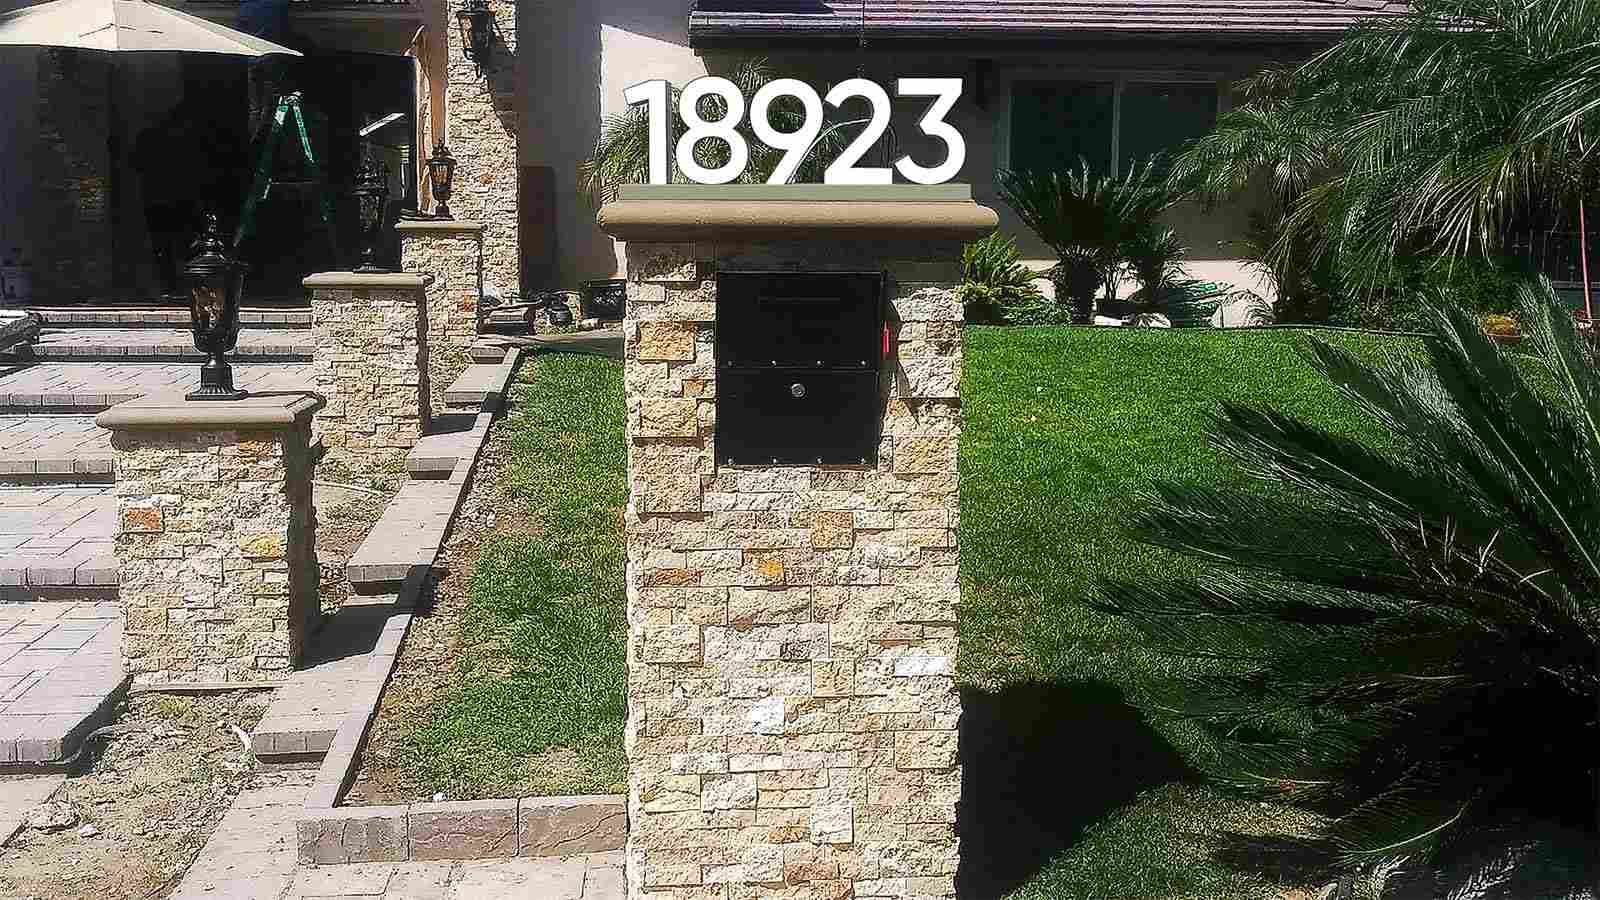 18923 outdoor 3d address sign